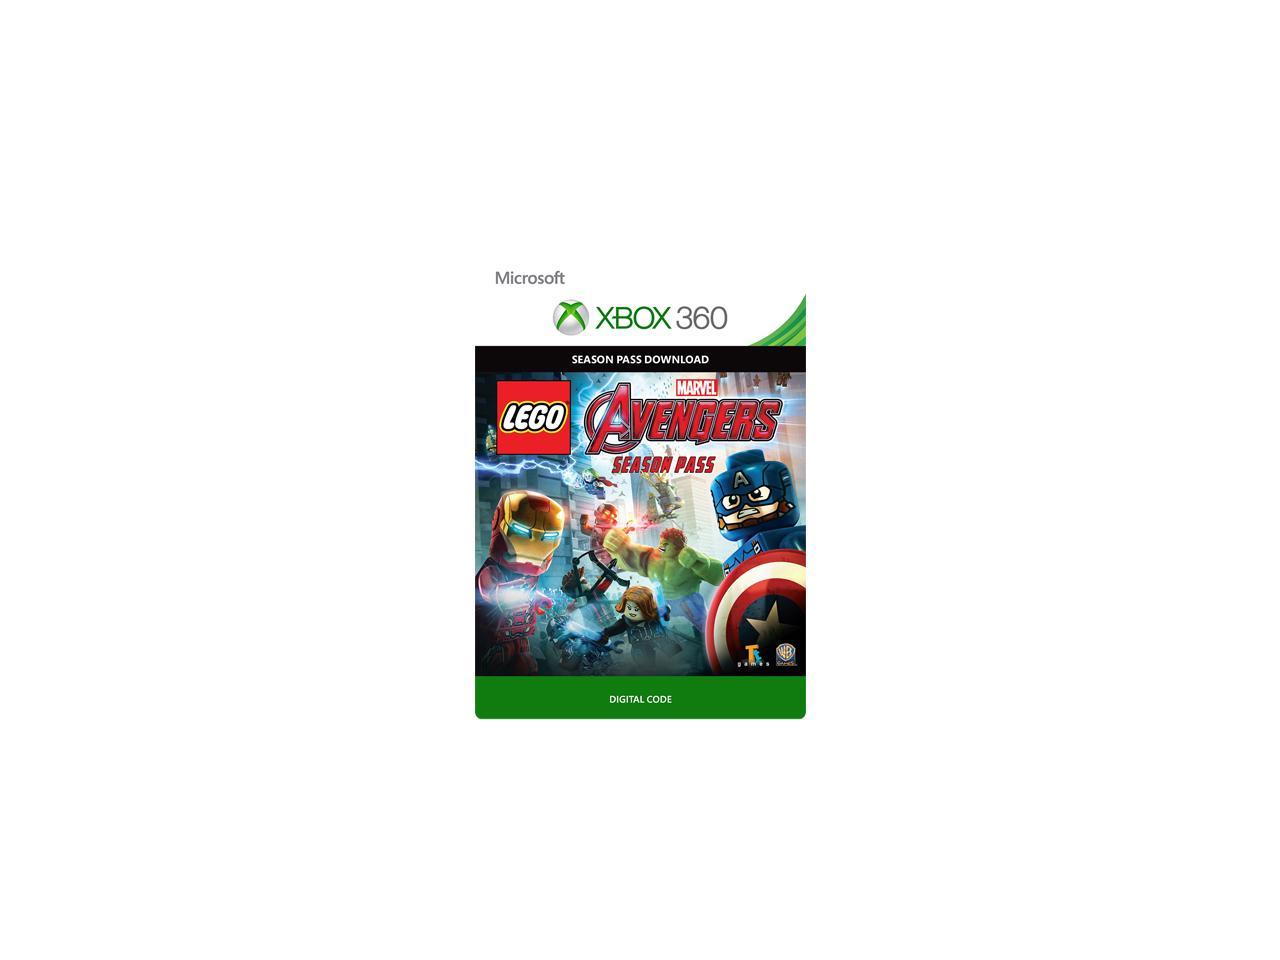 Drm Free Xbox 360 Games List